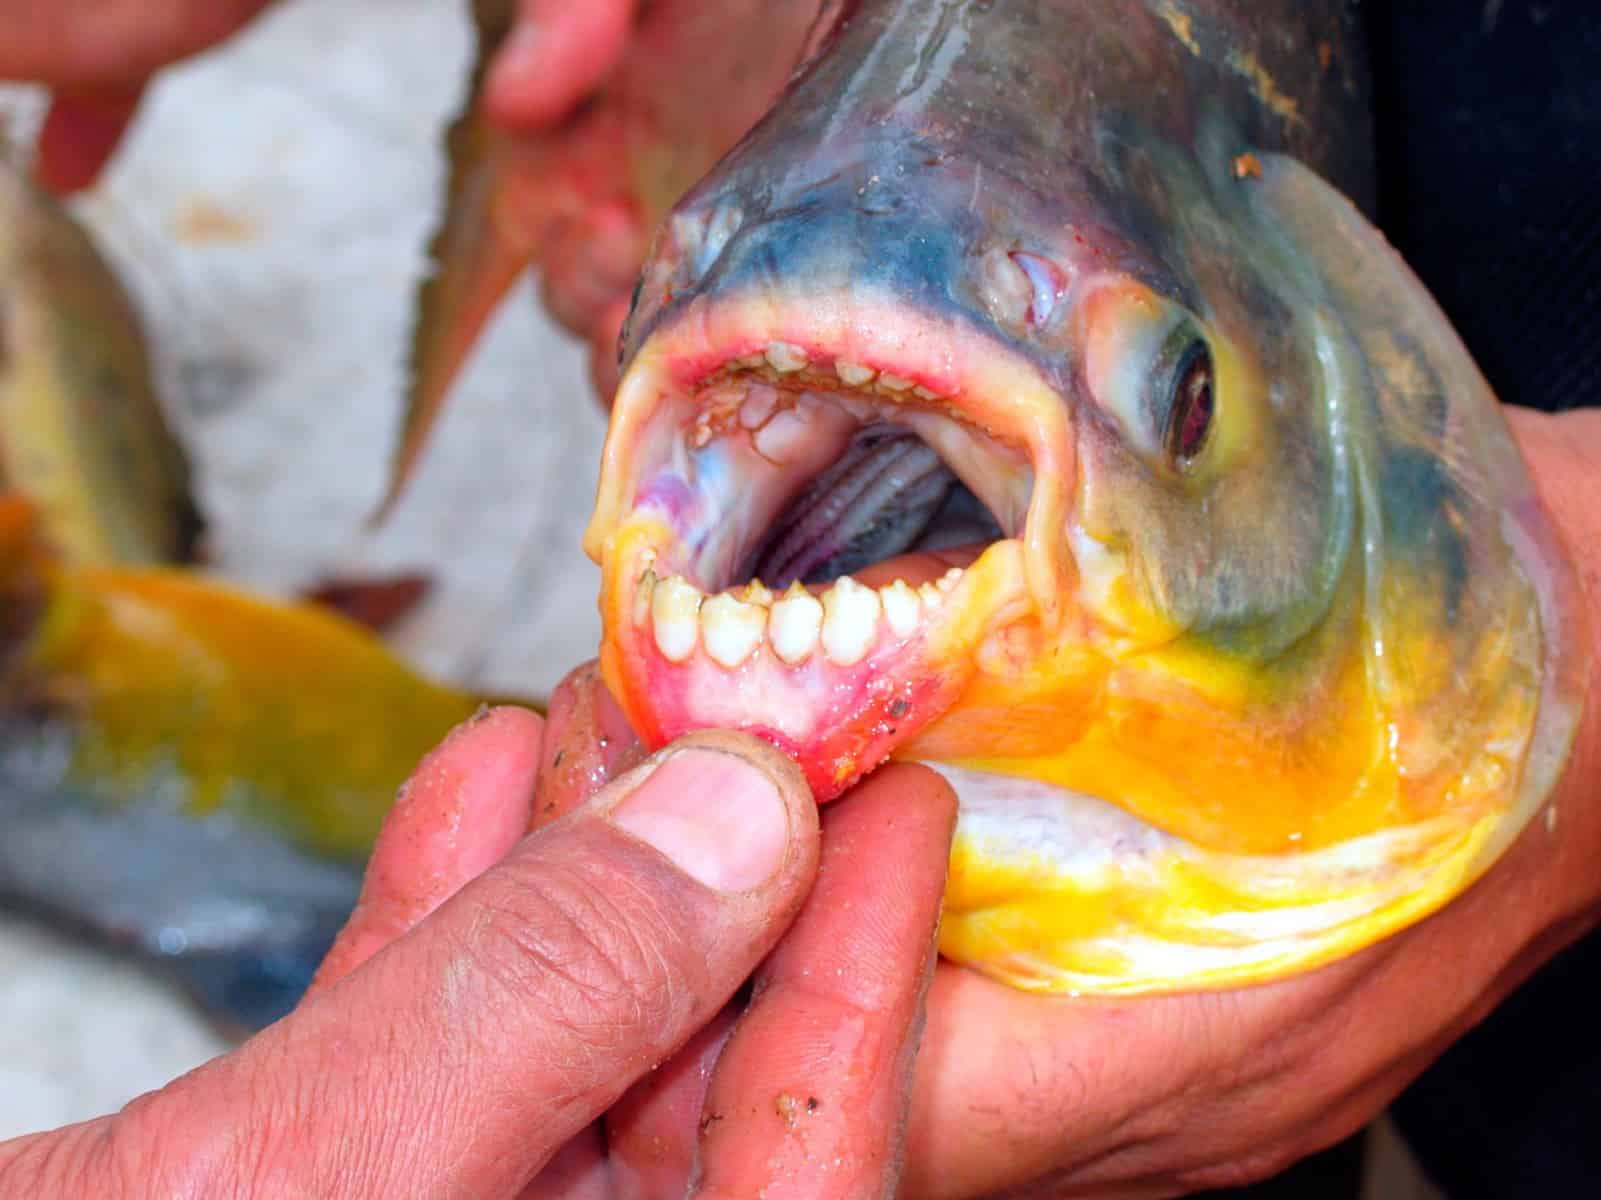 Pacu Fish with Teeth